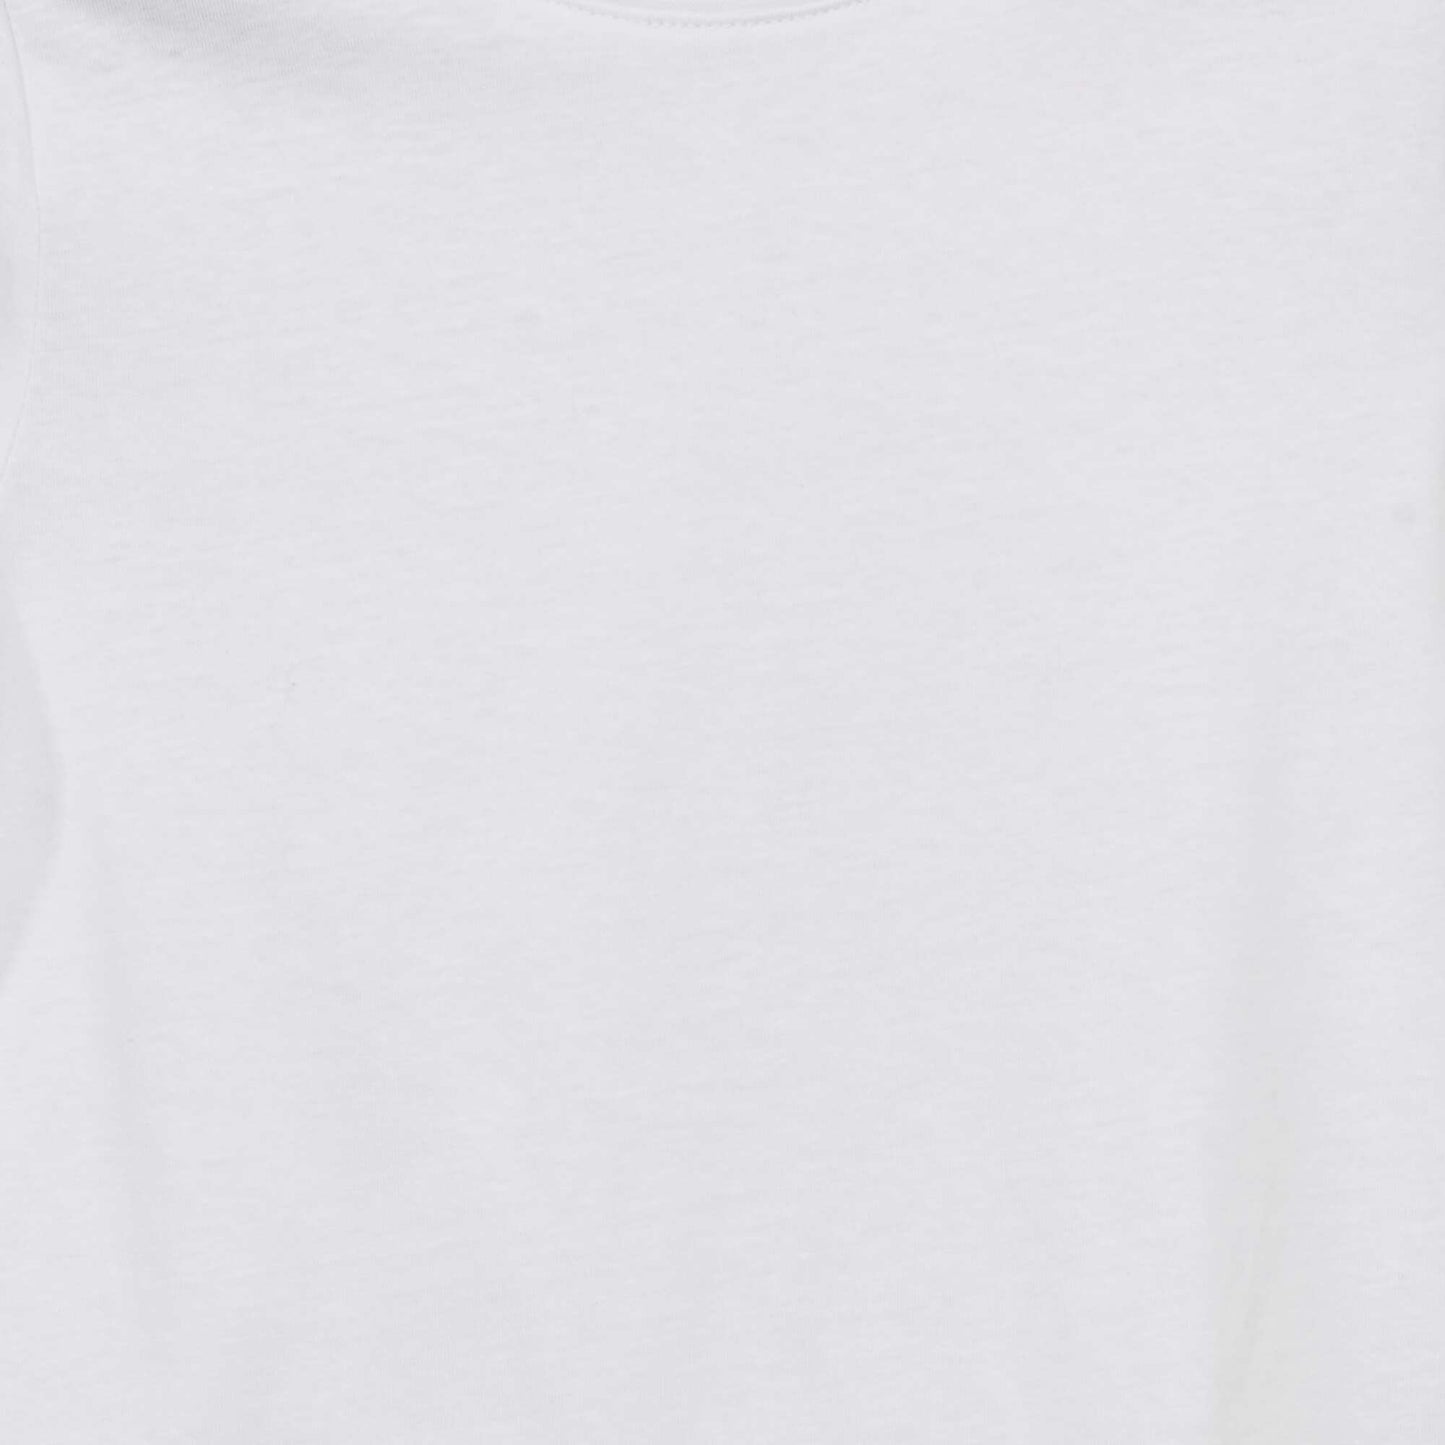 T-shirt uni manches courtes Blanc